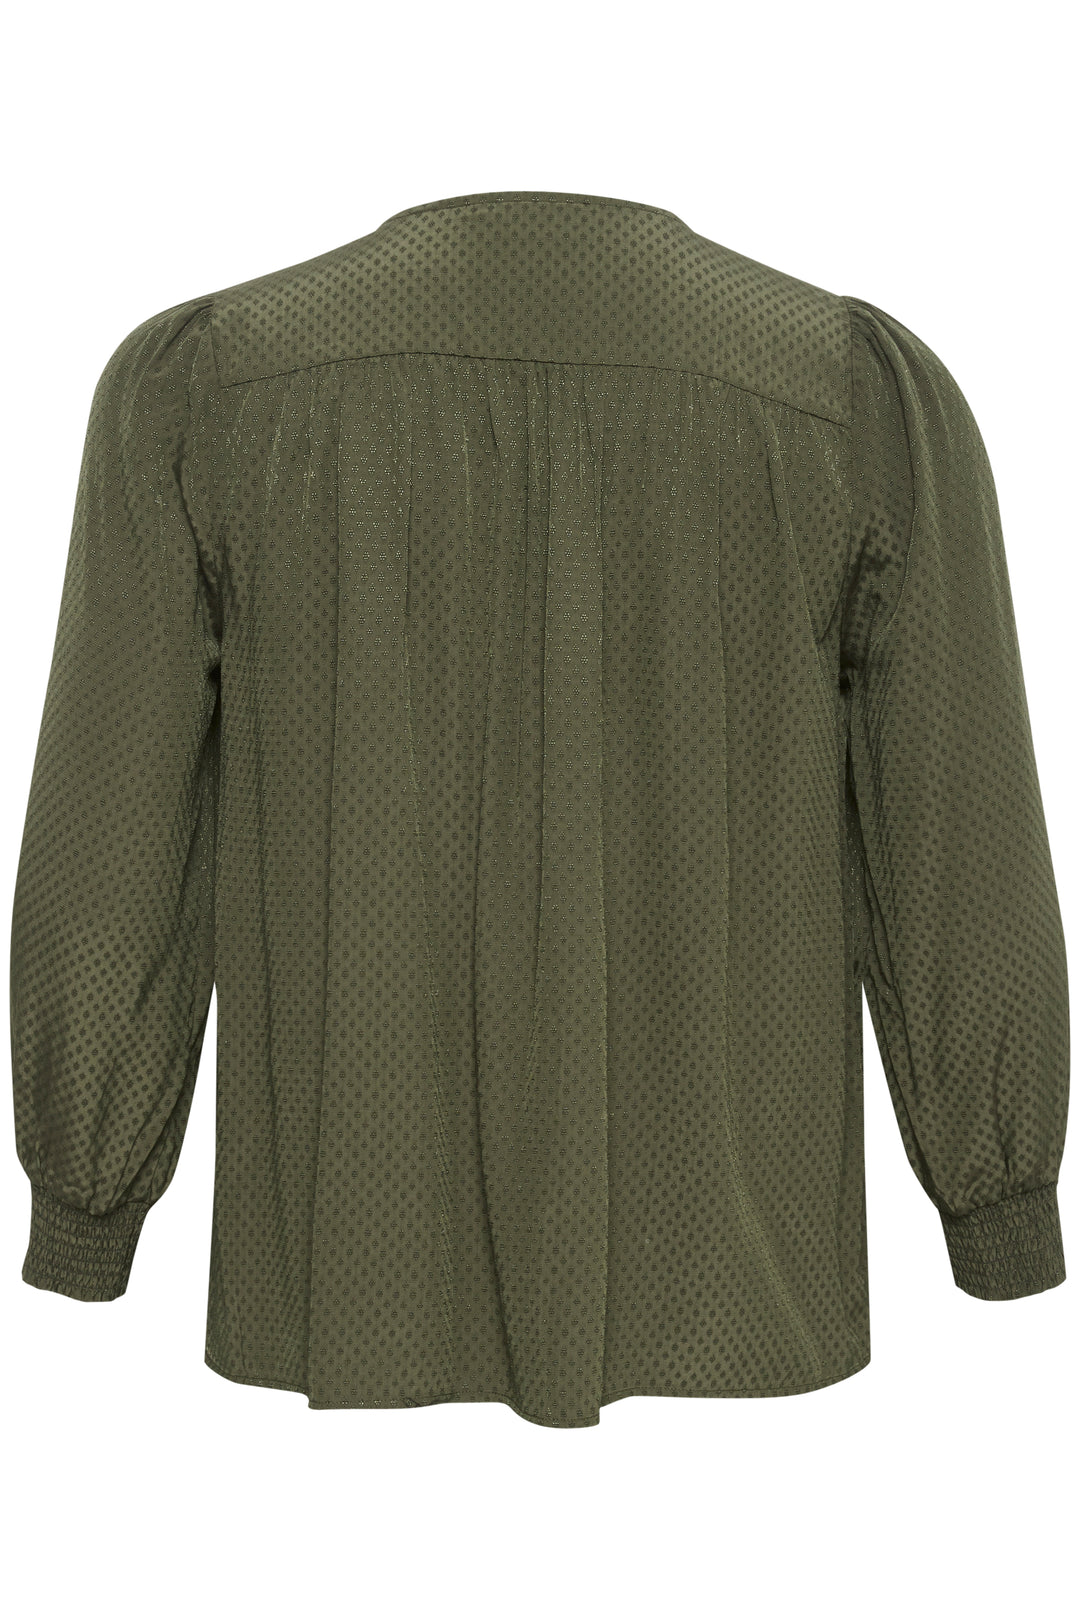 khaki blouse with tone on tone print